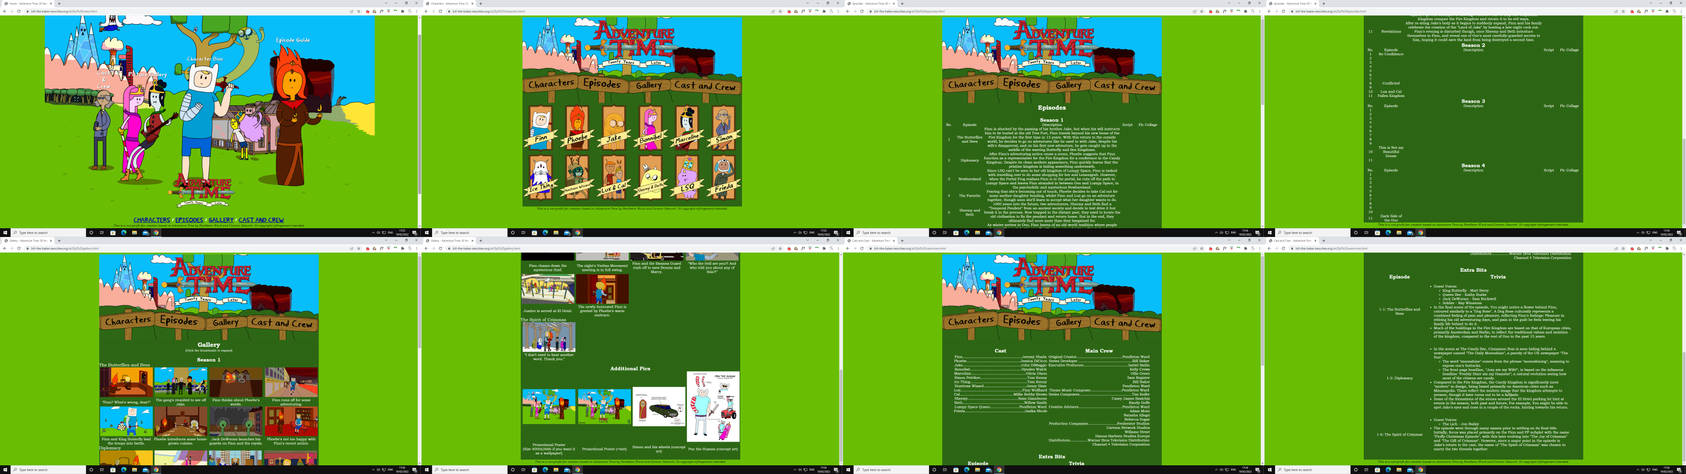 Y8.COM new WebSite layout 2014 - Y8 Games 